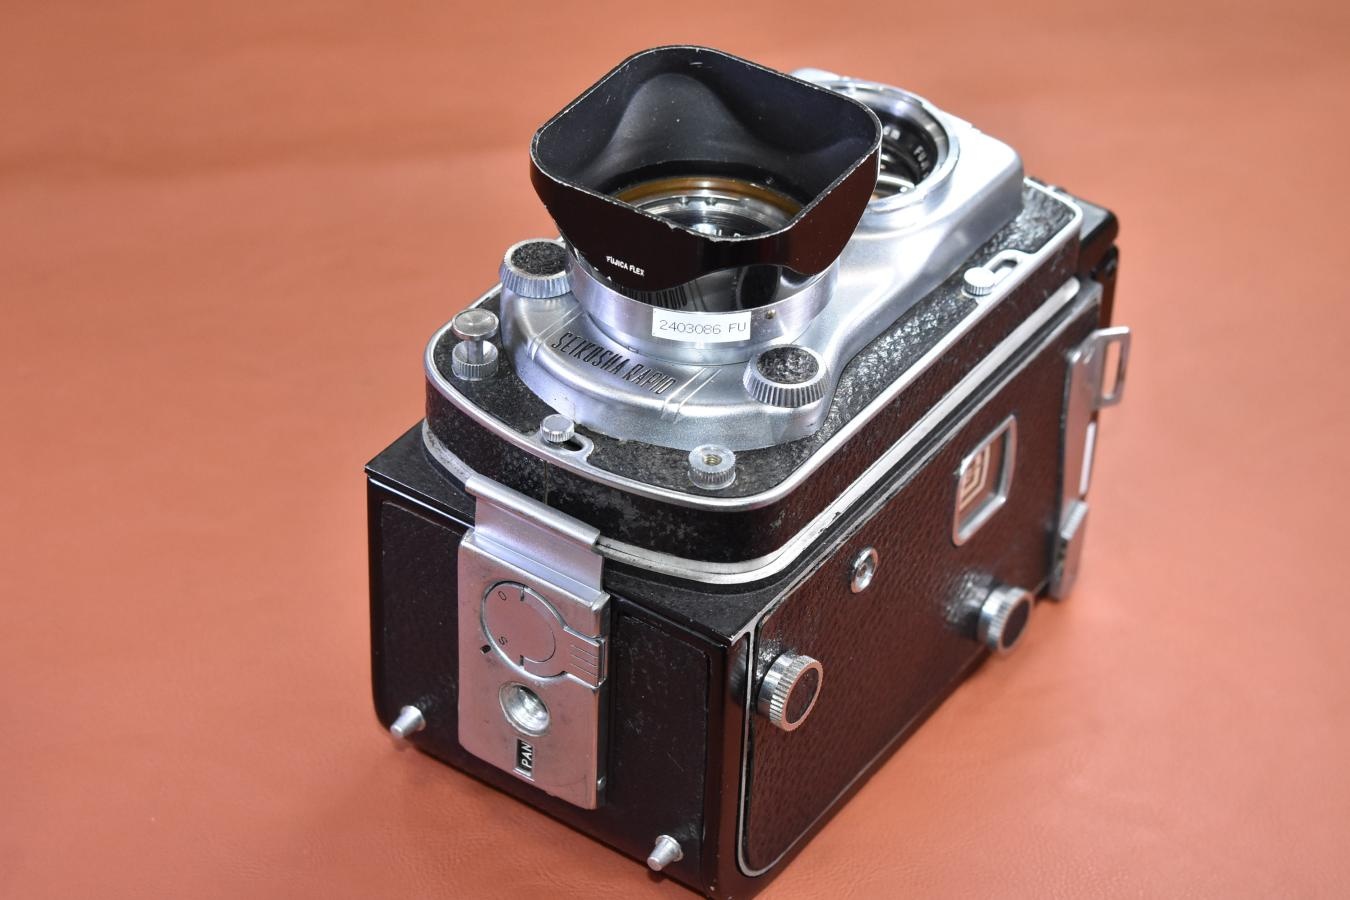 【希 少】FUJICA FLEX  純正専用メタルフード付【FUJINAR 8.3cm F2.8 レンズ搭載】※FUJIFILMが唯一作った二眼レフカメラで有名